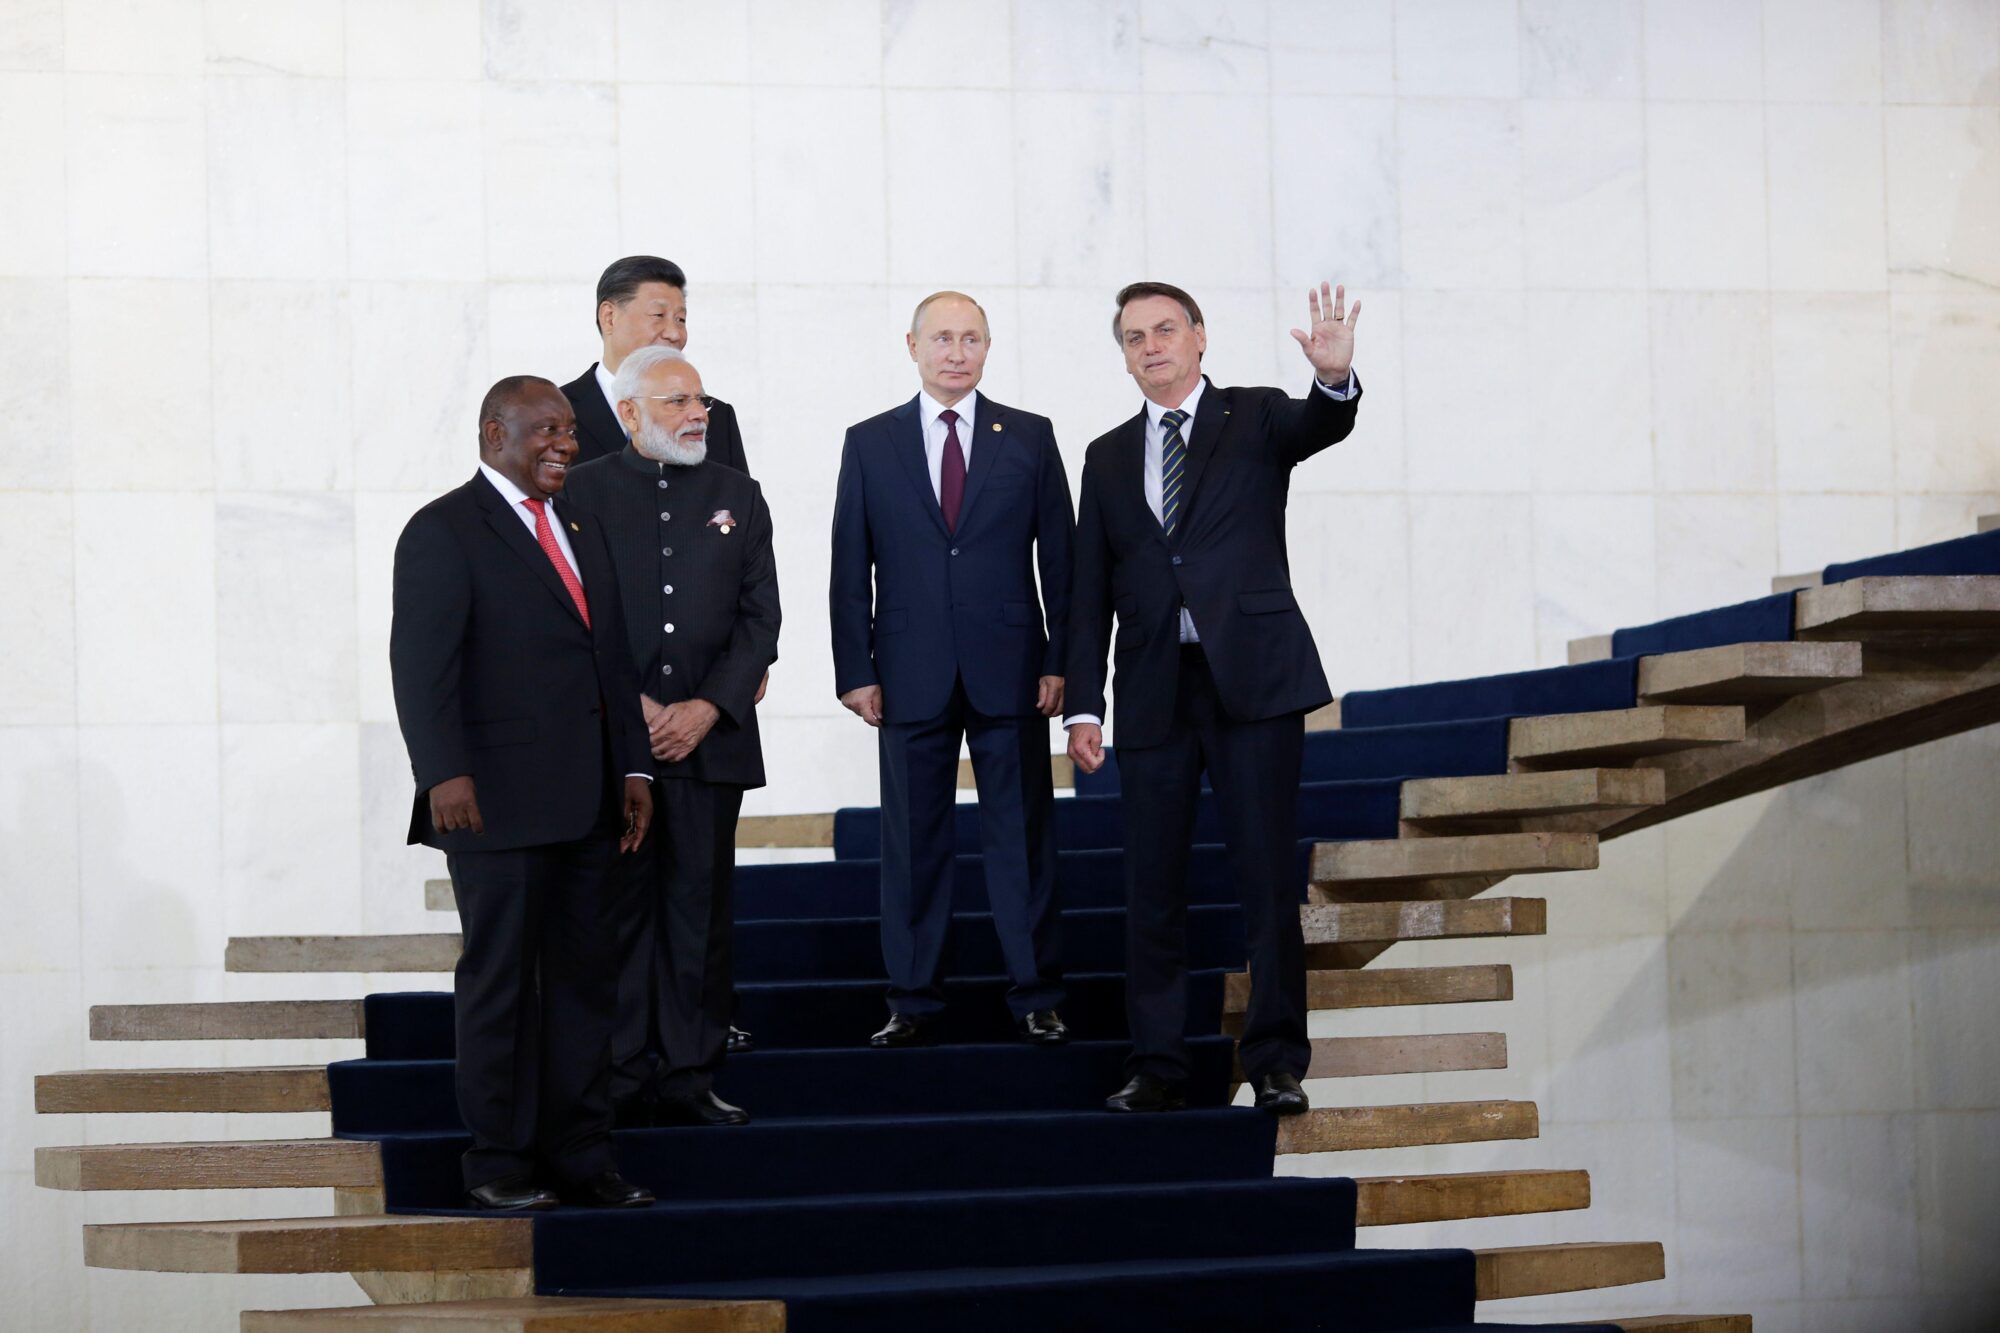 O presidente da África do Sul, Cyril Ramaphosa, o primeiro-ministro da Índia, Narendra Modi, o presidente da China, Xi Jinping, o presidente da Rússia, Vladimir Putin, e o presidente do Brasil, Jair Bolsonaro, em uma escadaria.